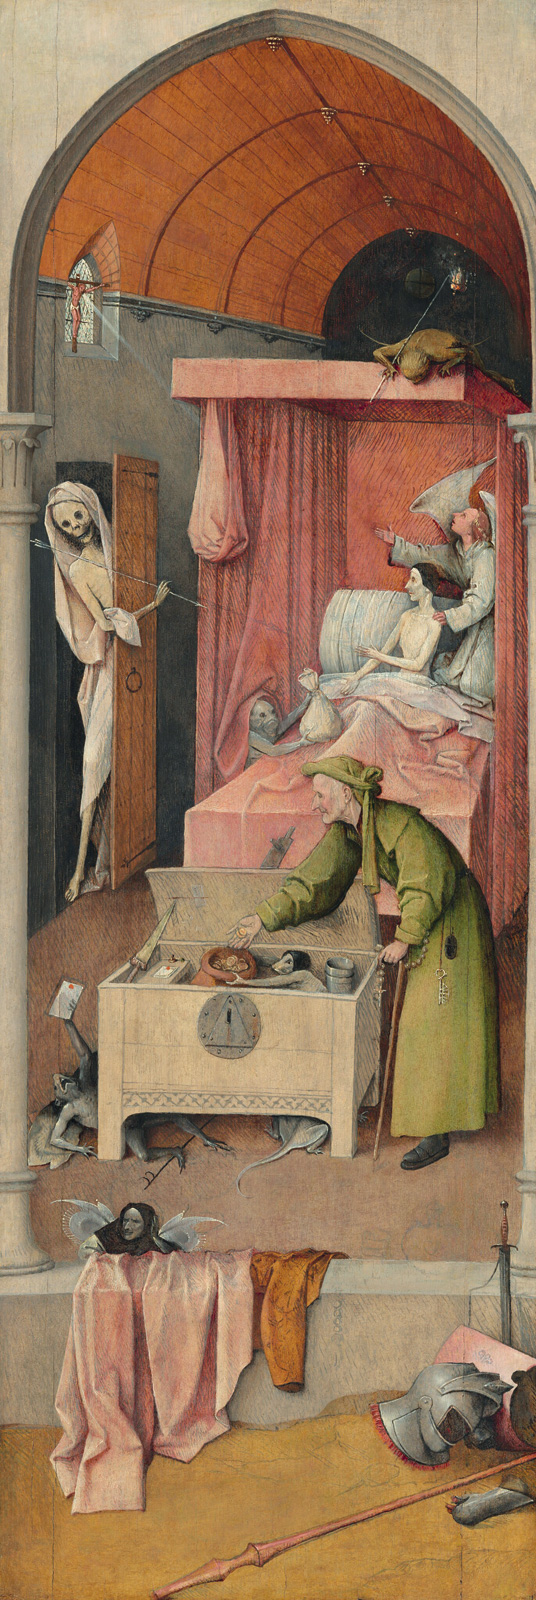 Hieronymus Bosch, *La muerte y la avara*, *ca*. 1485-1490. National Gallery of Art